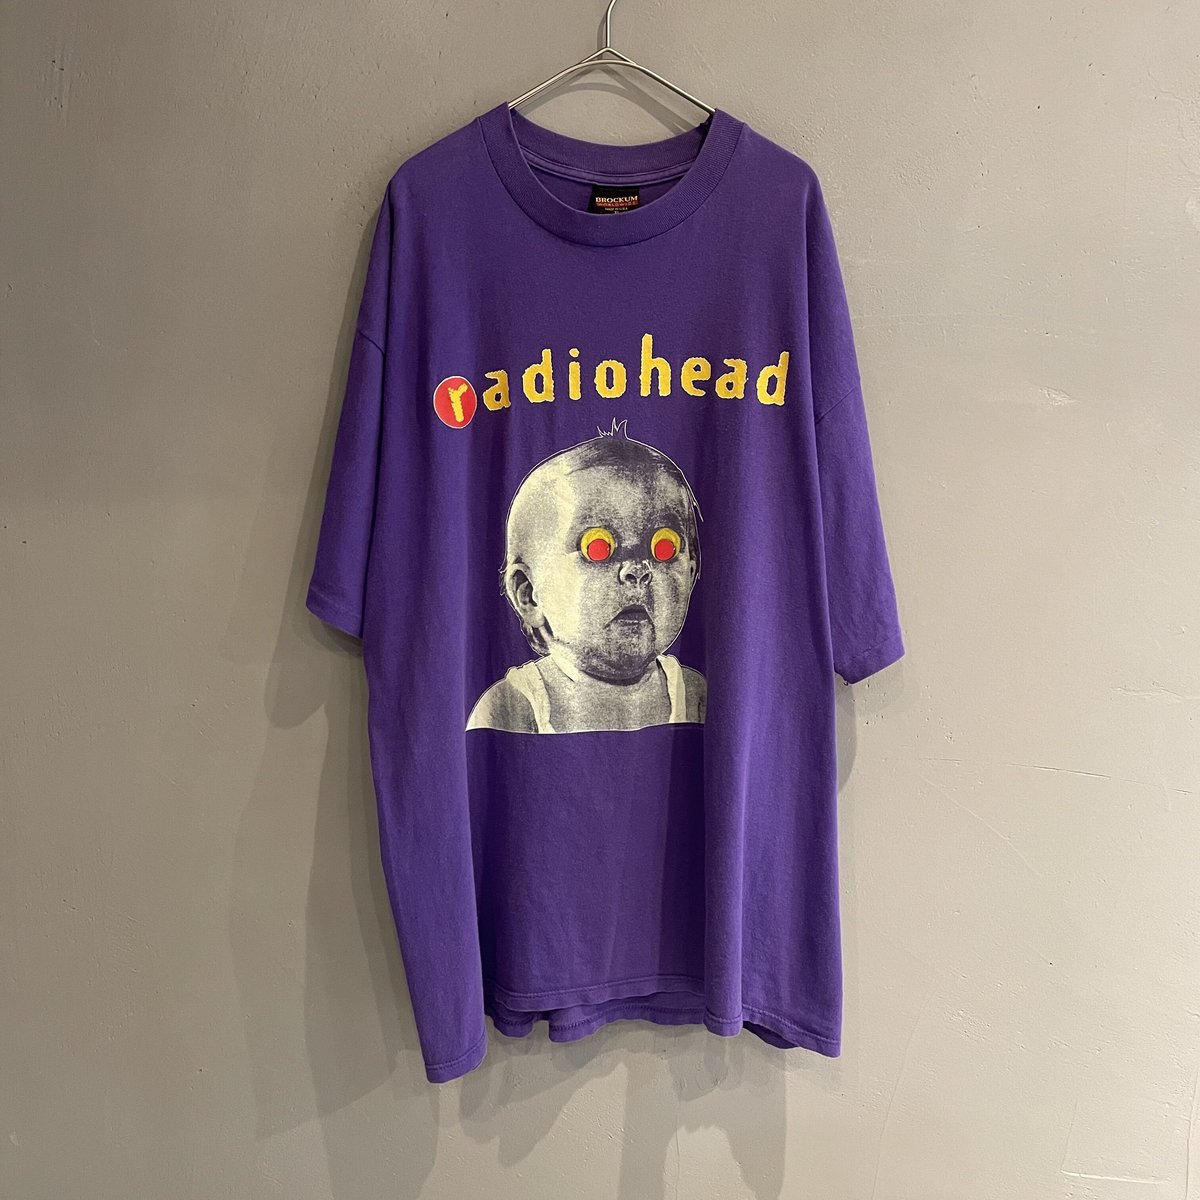 nirvana【悶絶】radiohead tシャツ Pablo honey コピーライト付き - T